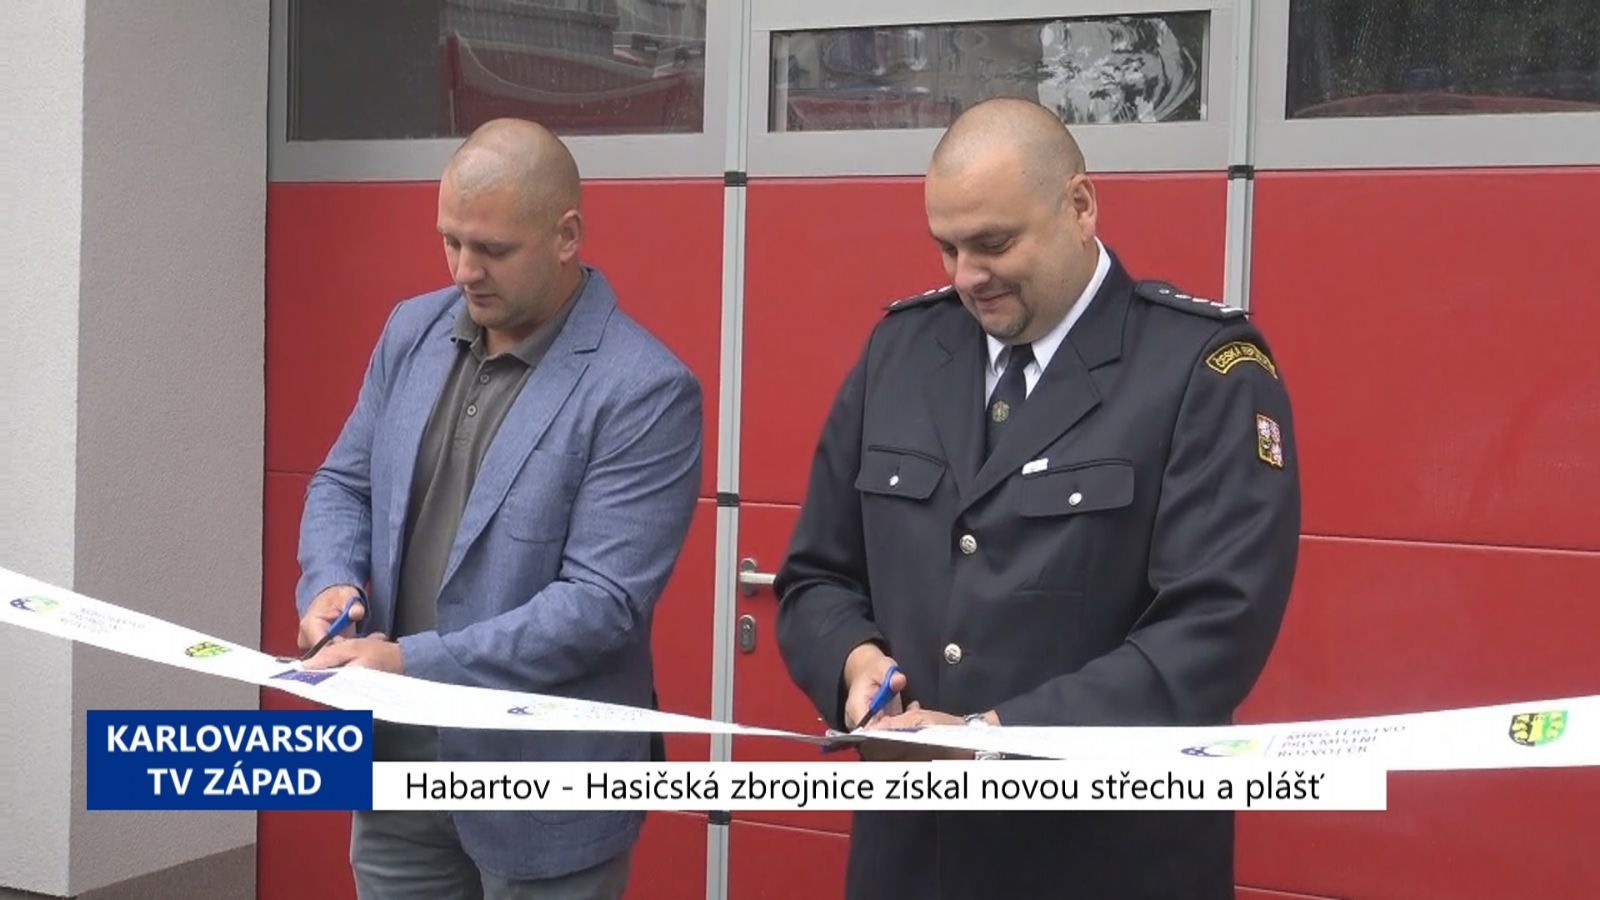 Habartov: Hasičská zbrojnice dostala novou střechu a plášť (TV Západ)